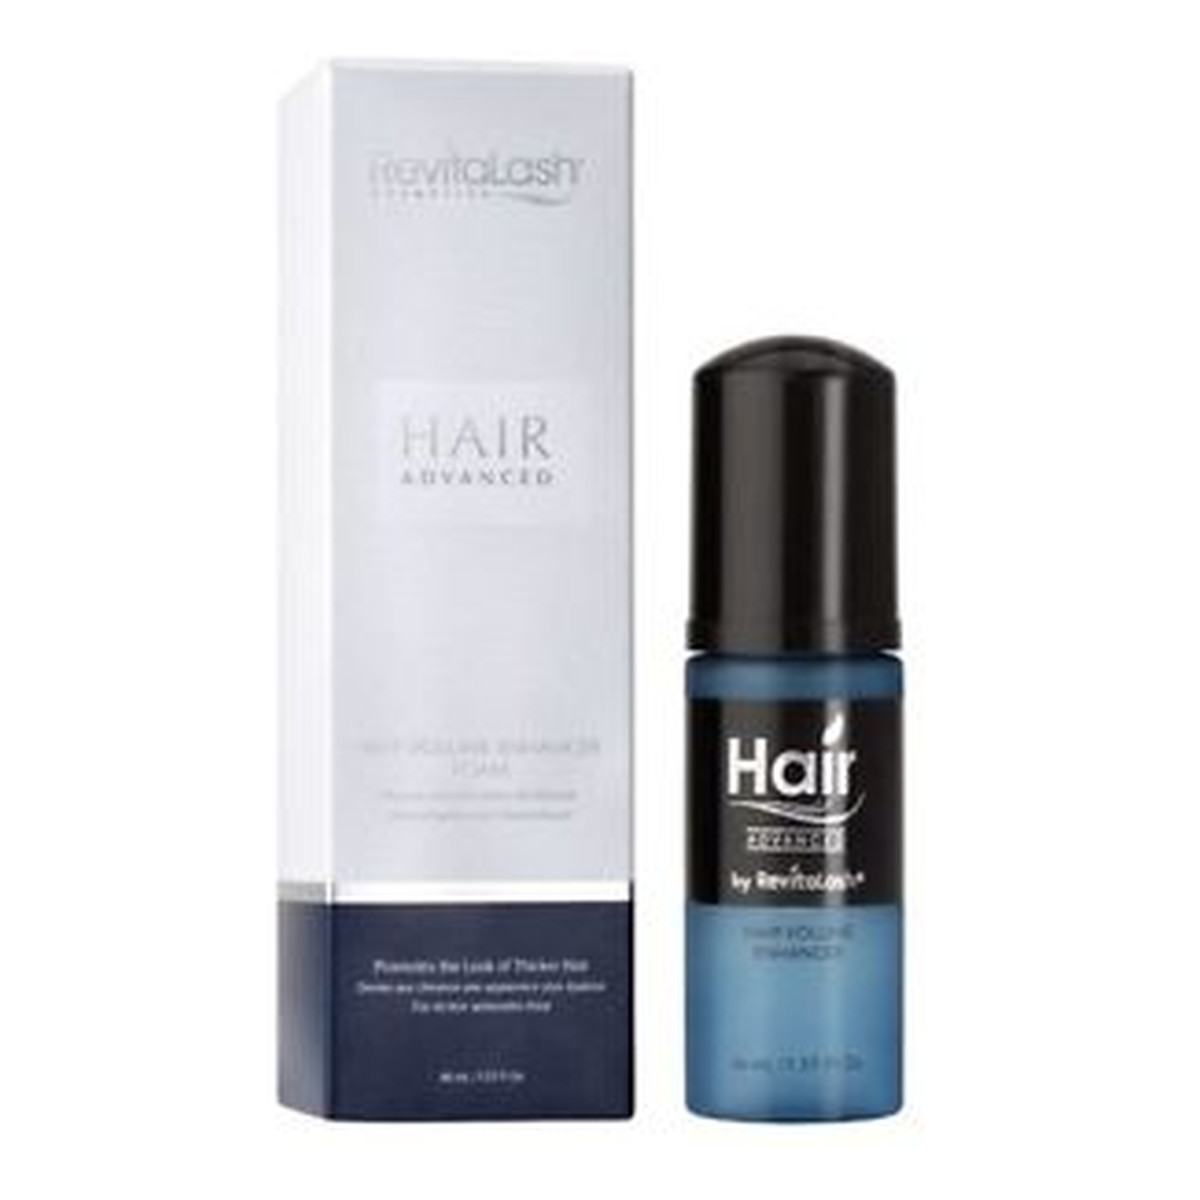 RevitaLash Hair Advanced Odżywka Stymulująca Wzrost Włosów 46 ml 46ml